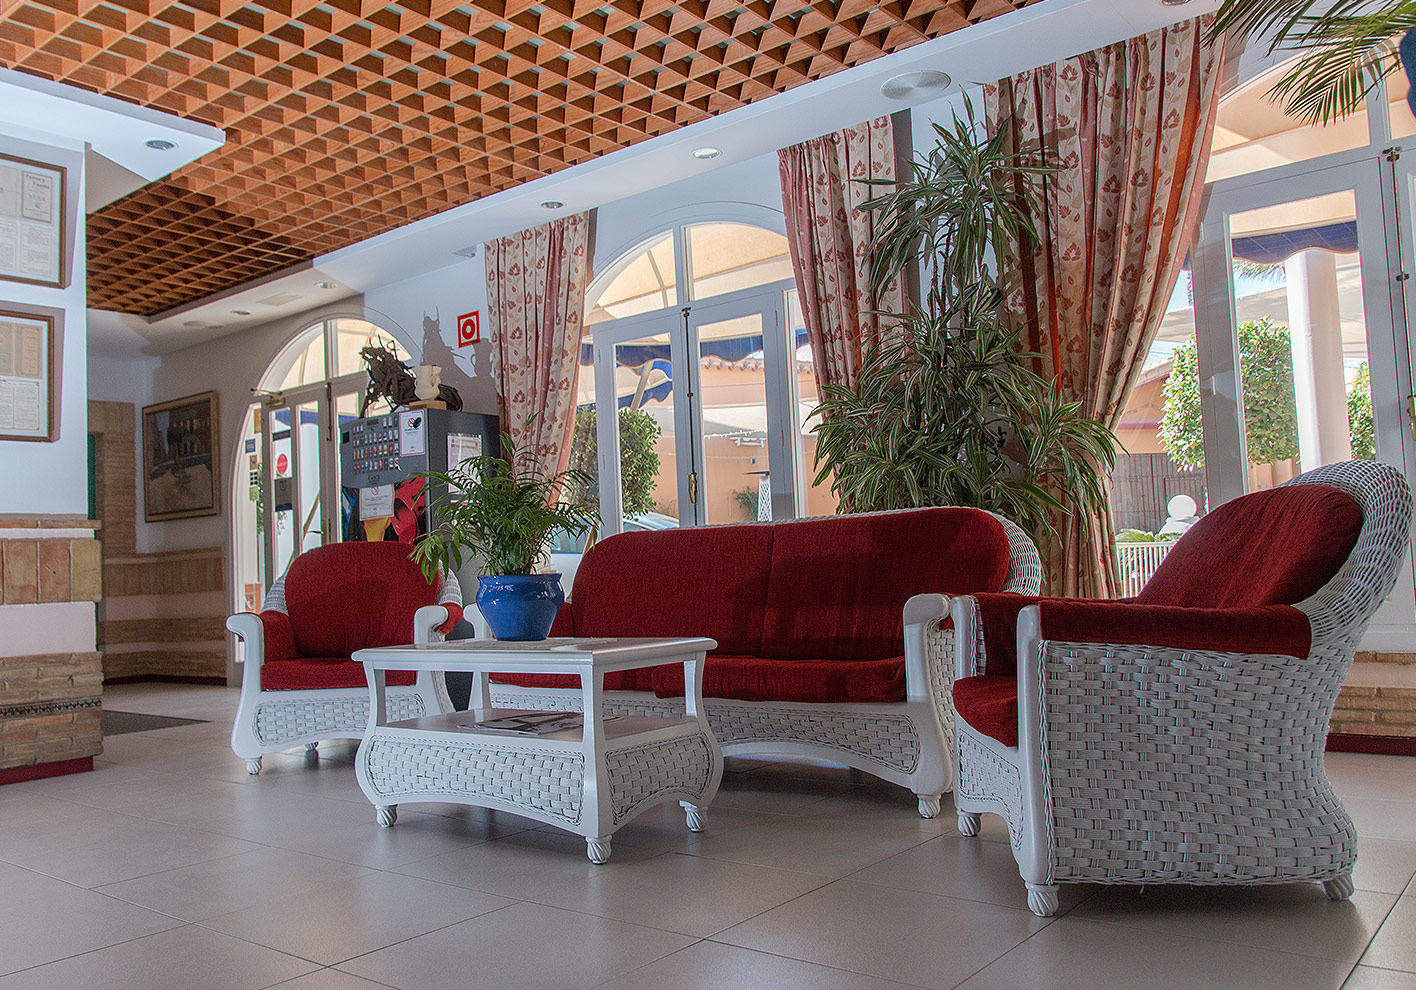 Sofa in the Entrance of the Terraza Carmona Restaurant Hotel in Vera, Almeria